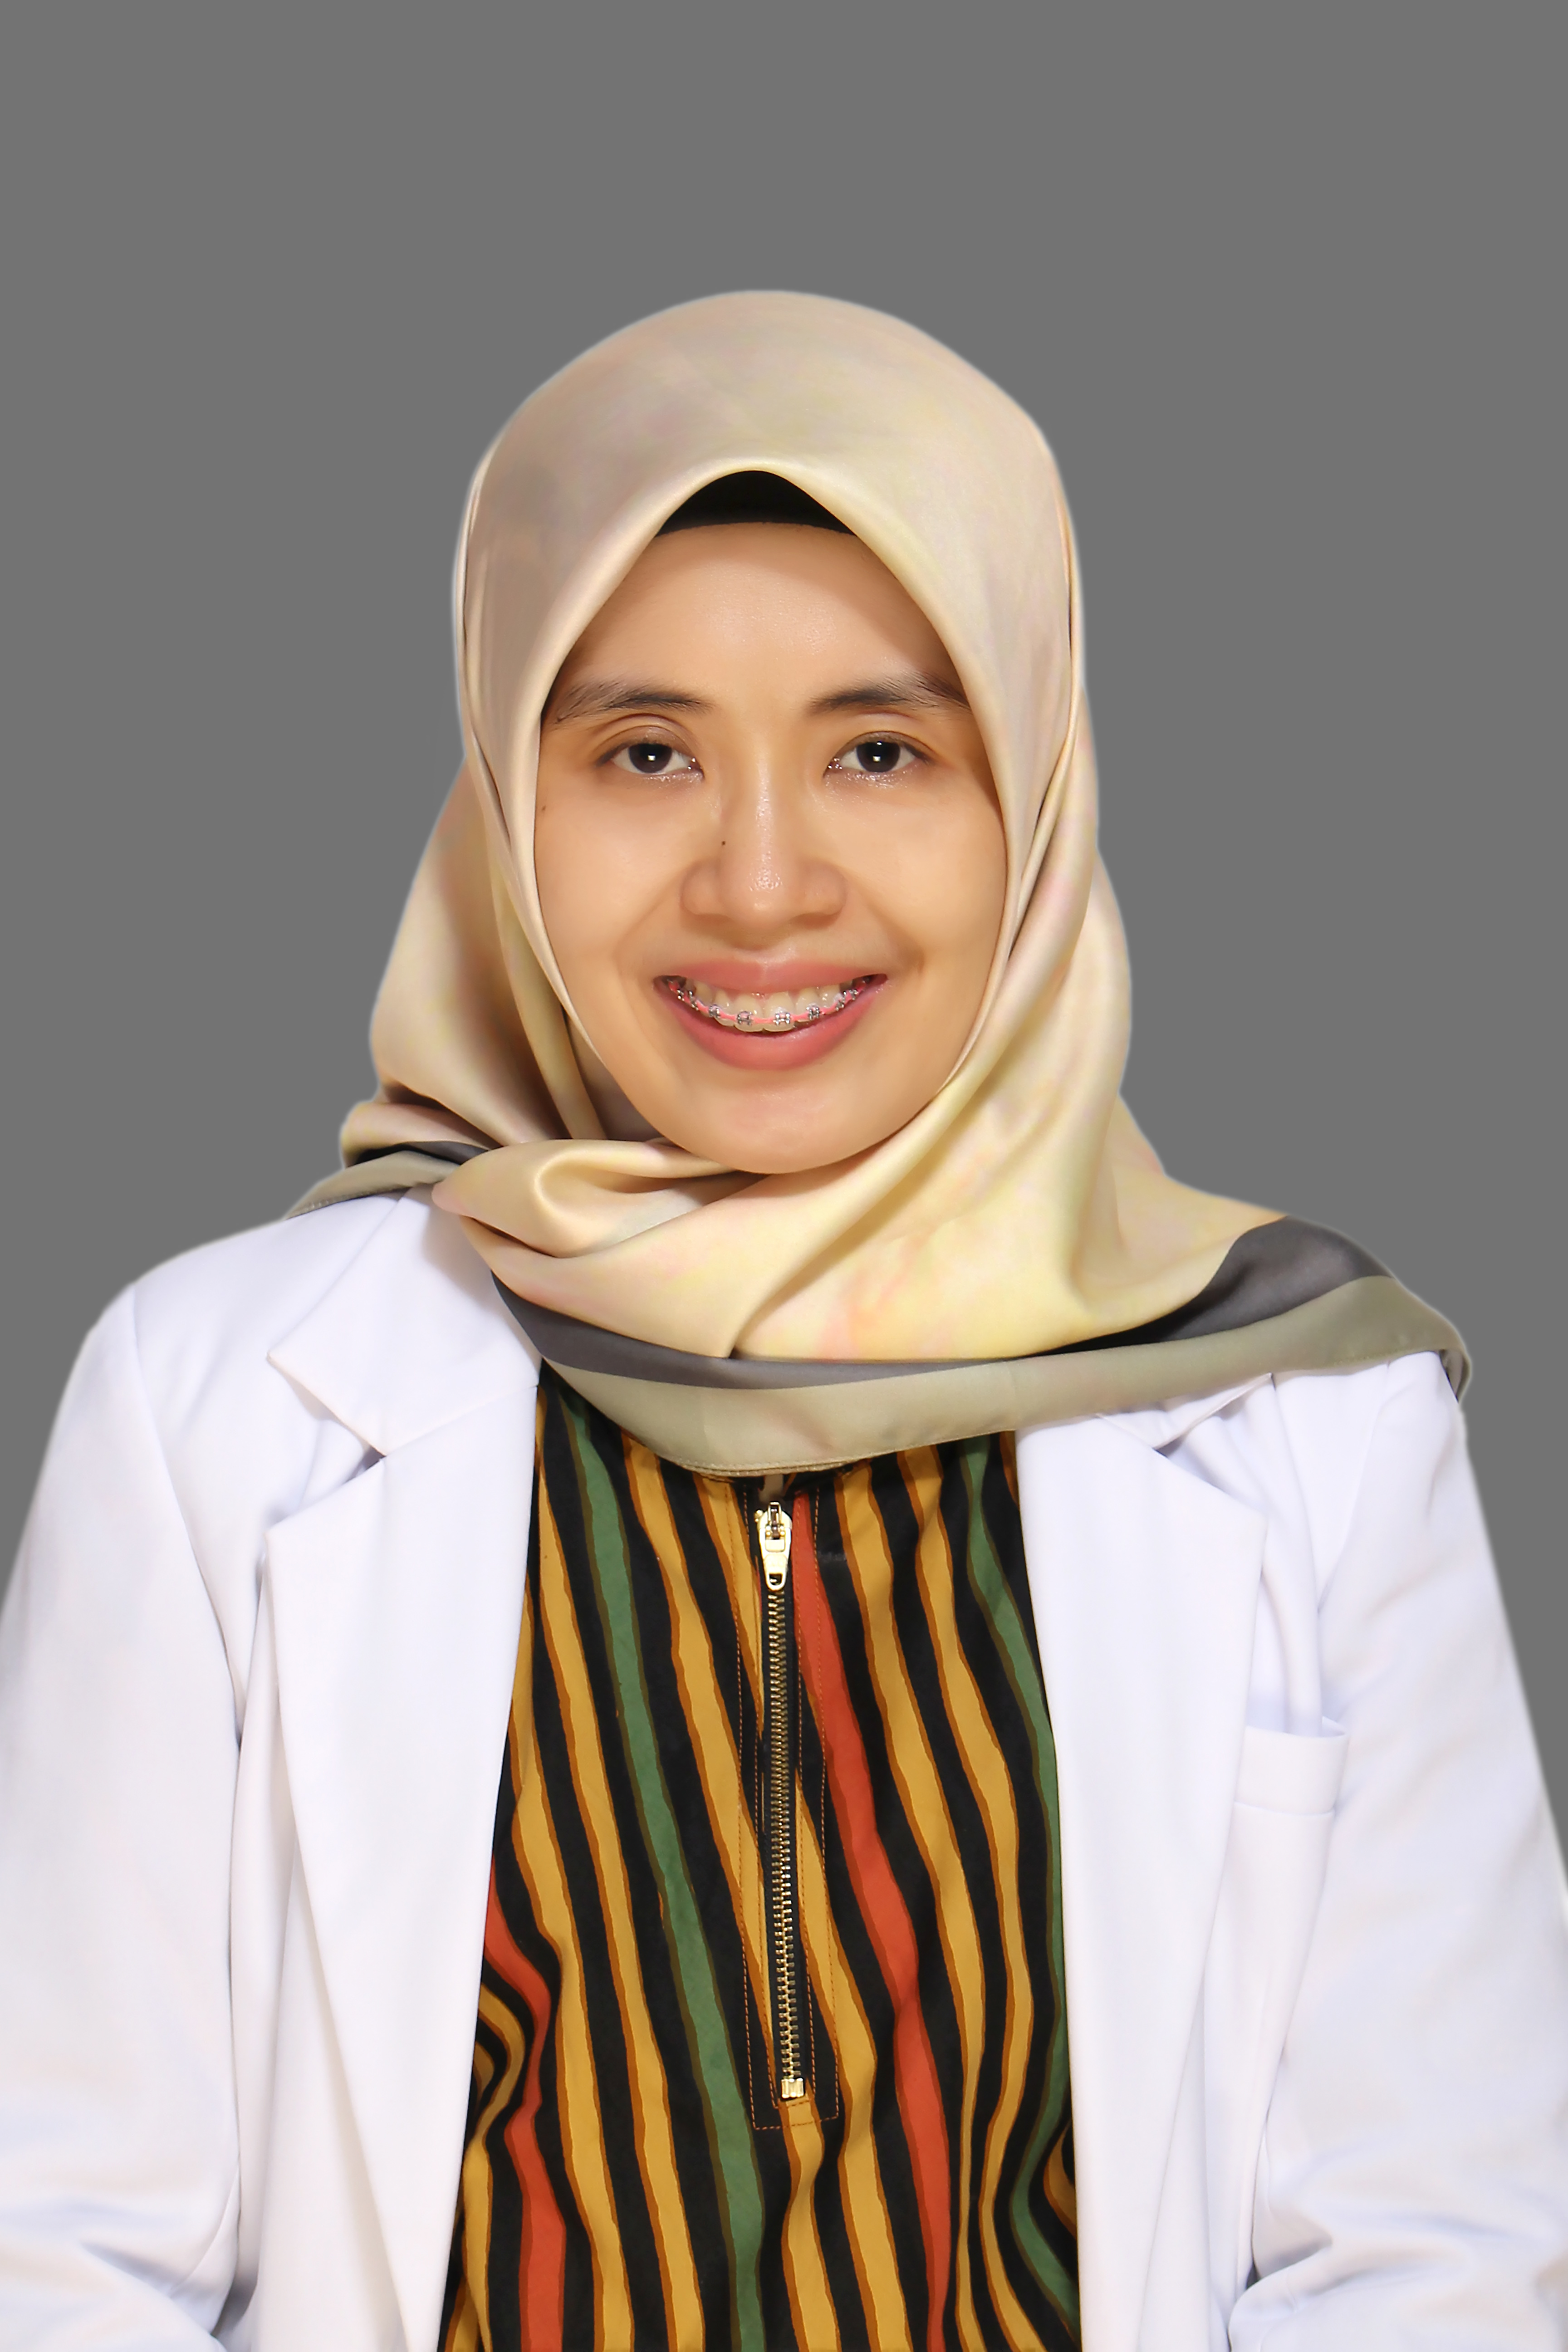 dr. Kasihana Hismanita S, Sp. M